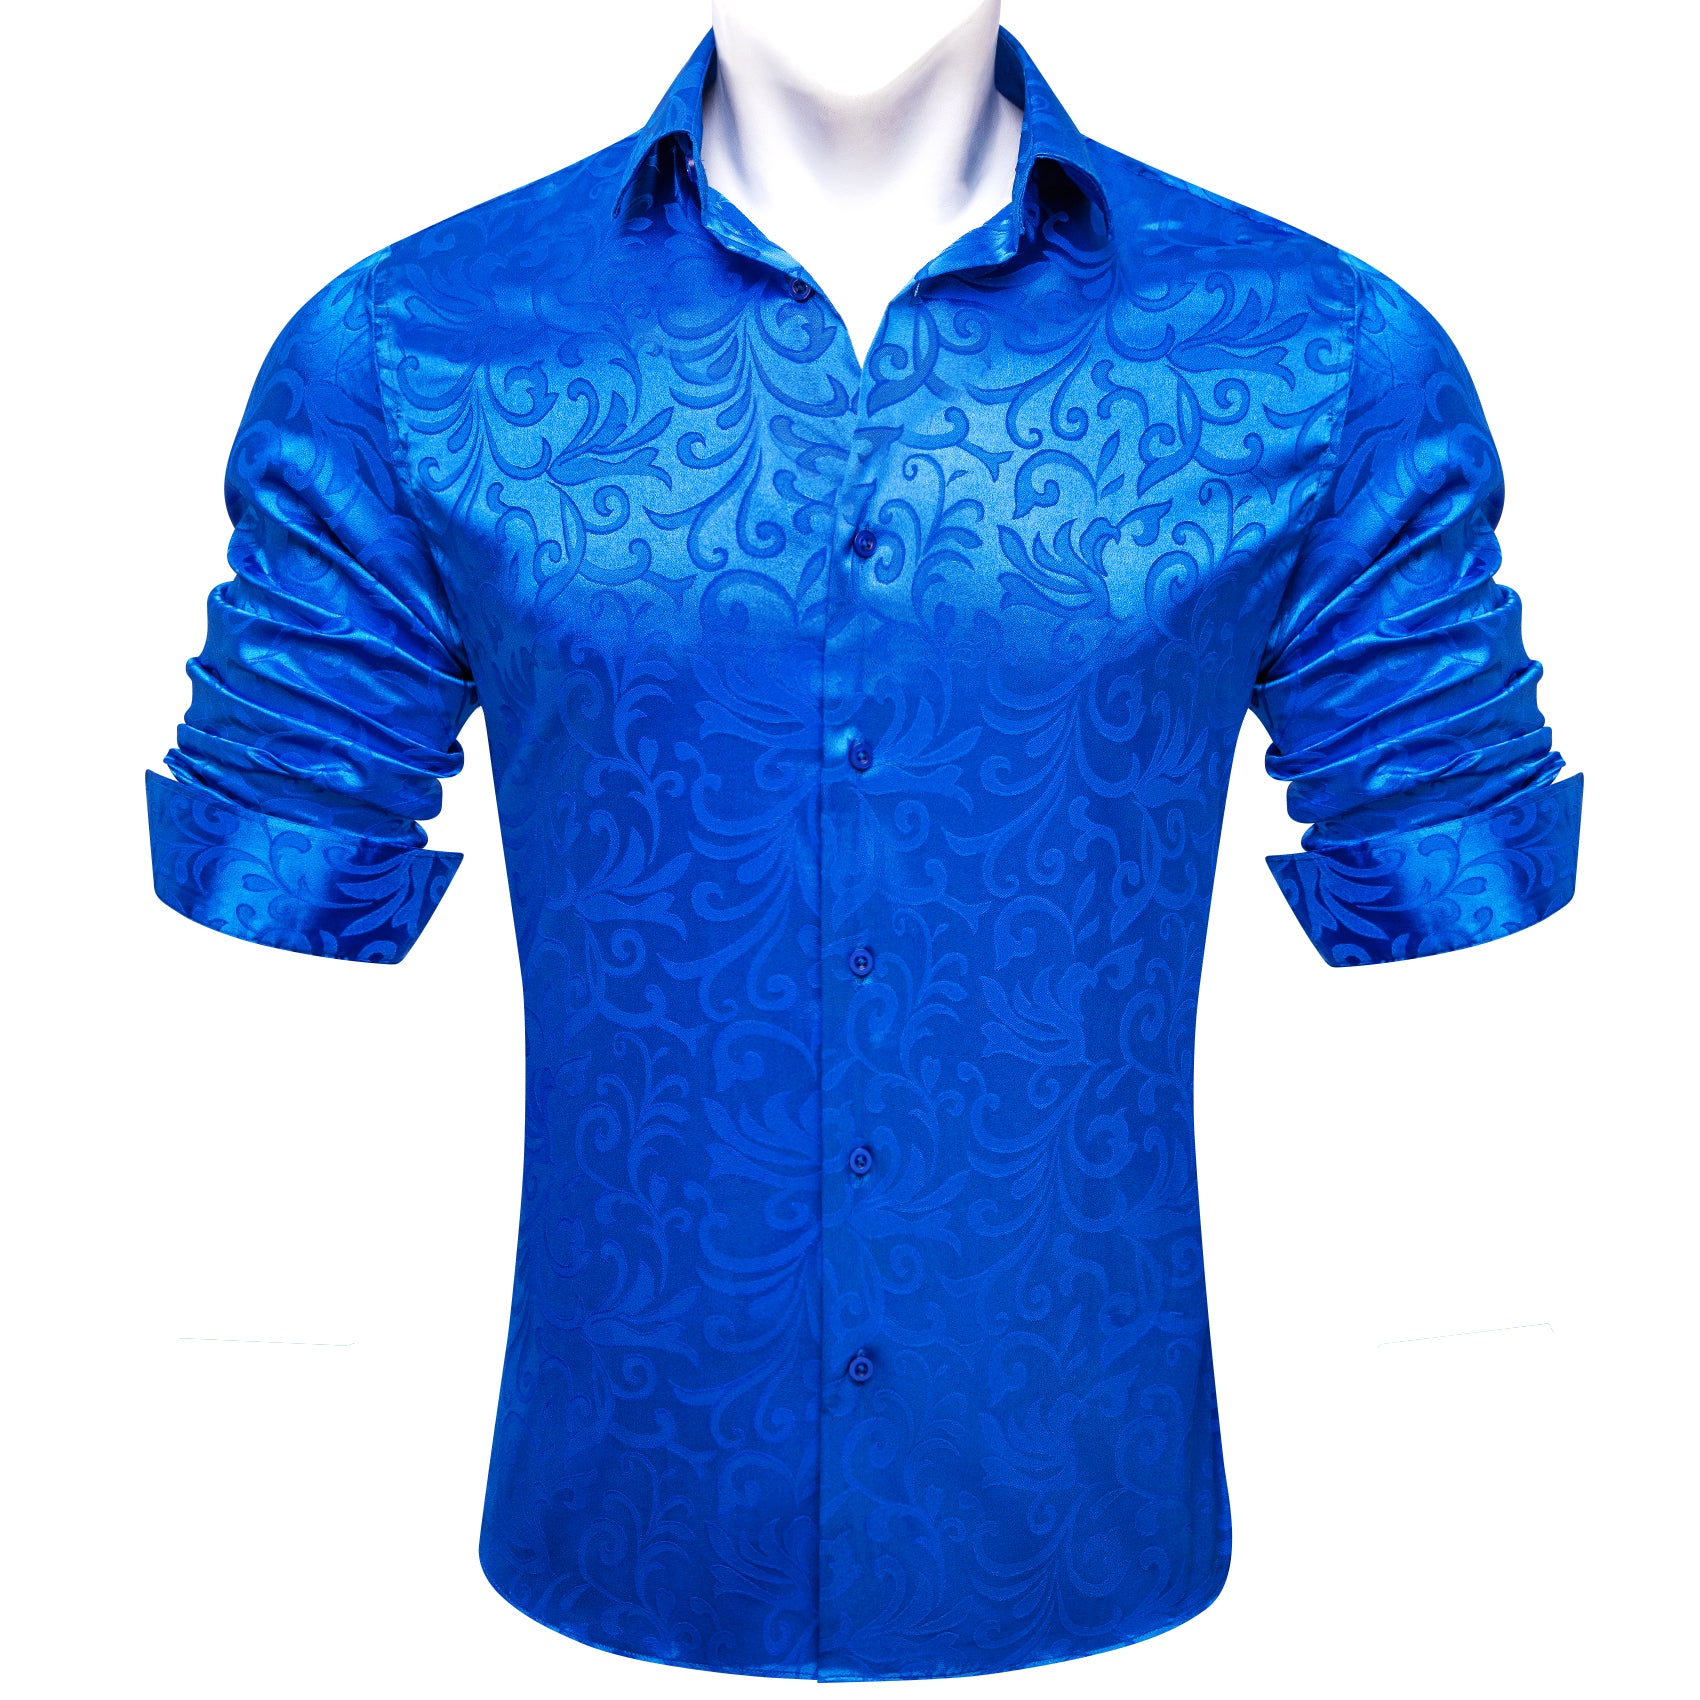 Barry.wang Cerulean Blue Floral Silk Men's Shirt